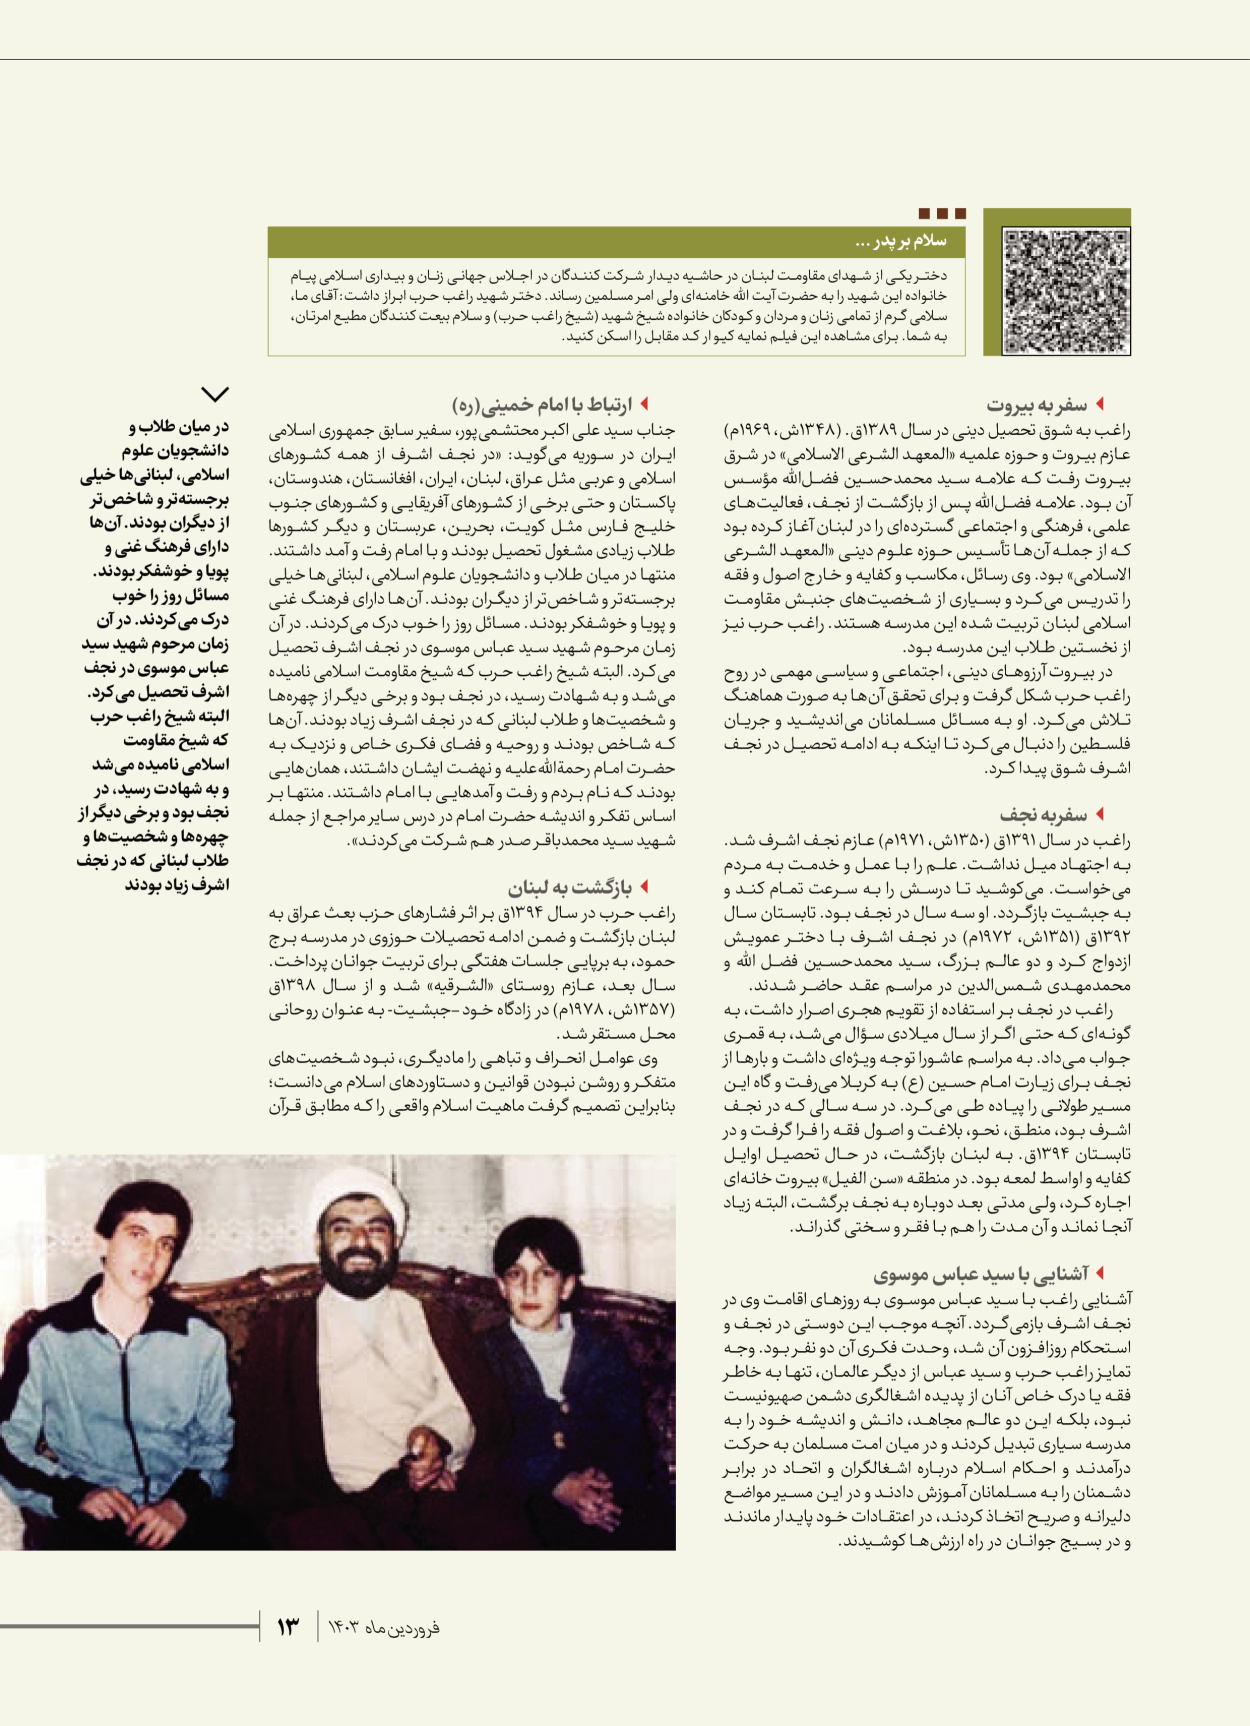 روزنامه ایران - ویژه نامه شهدای قدس ۶ - ۲۵ فروردین ۱۴۰۳ - صفحه ۱۳